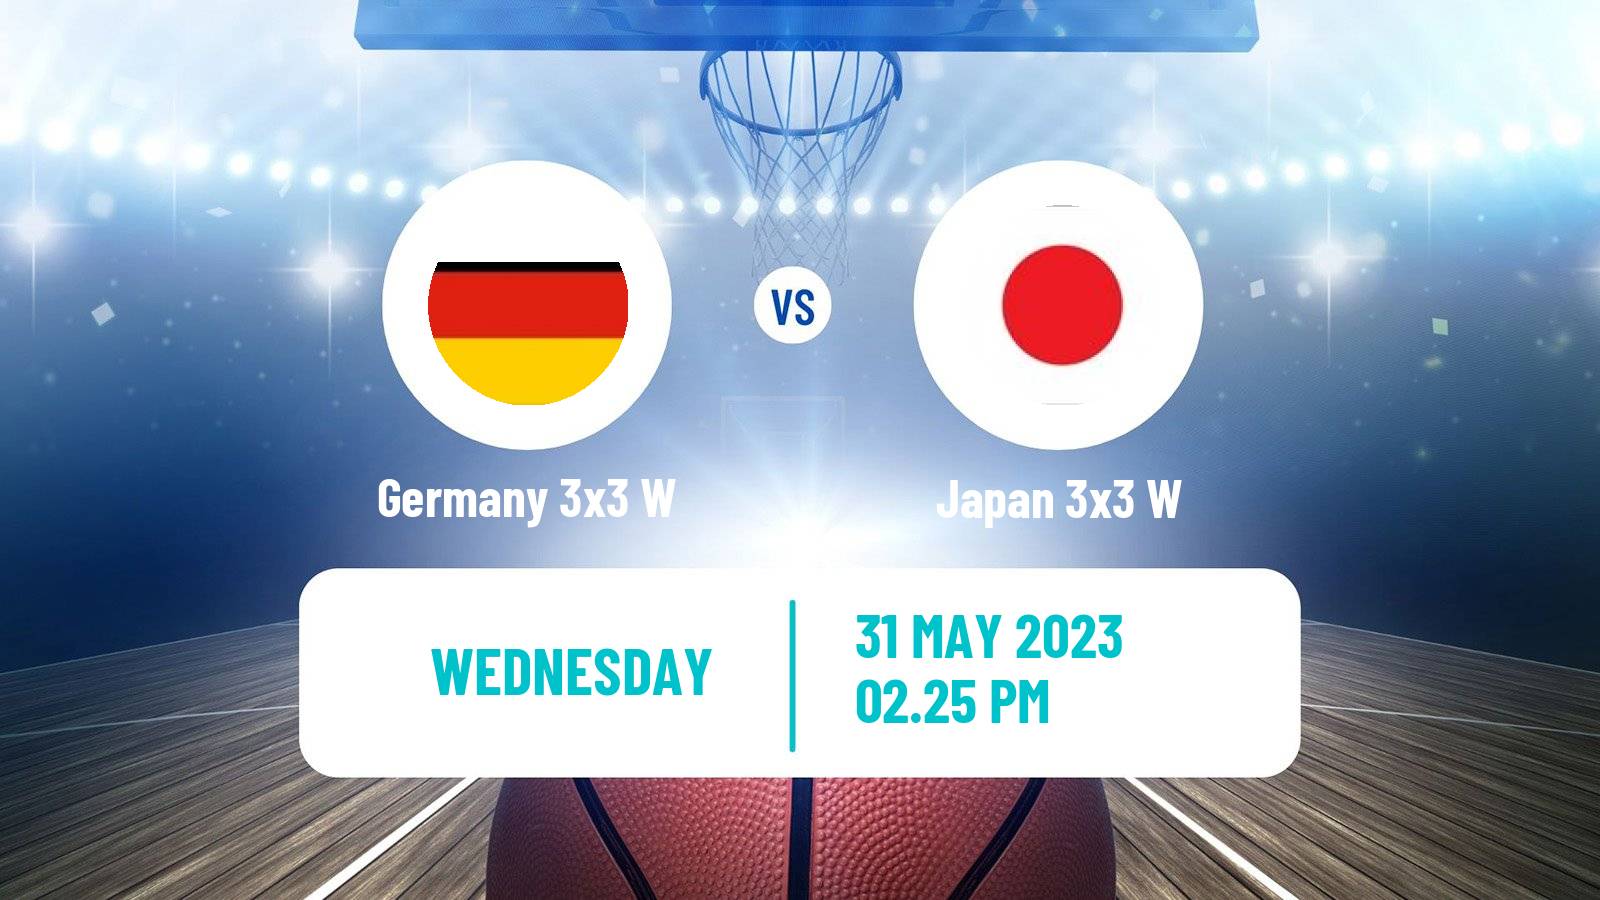 Basketball World Cup Basketball 3x3 Women Germany 3x3 W - Japan 3x3 W